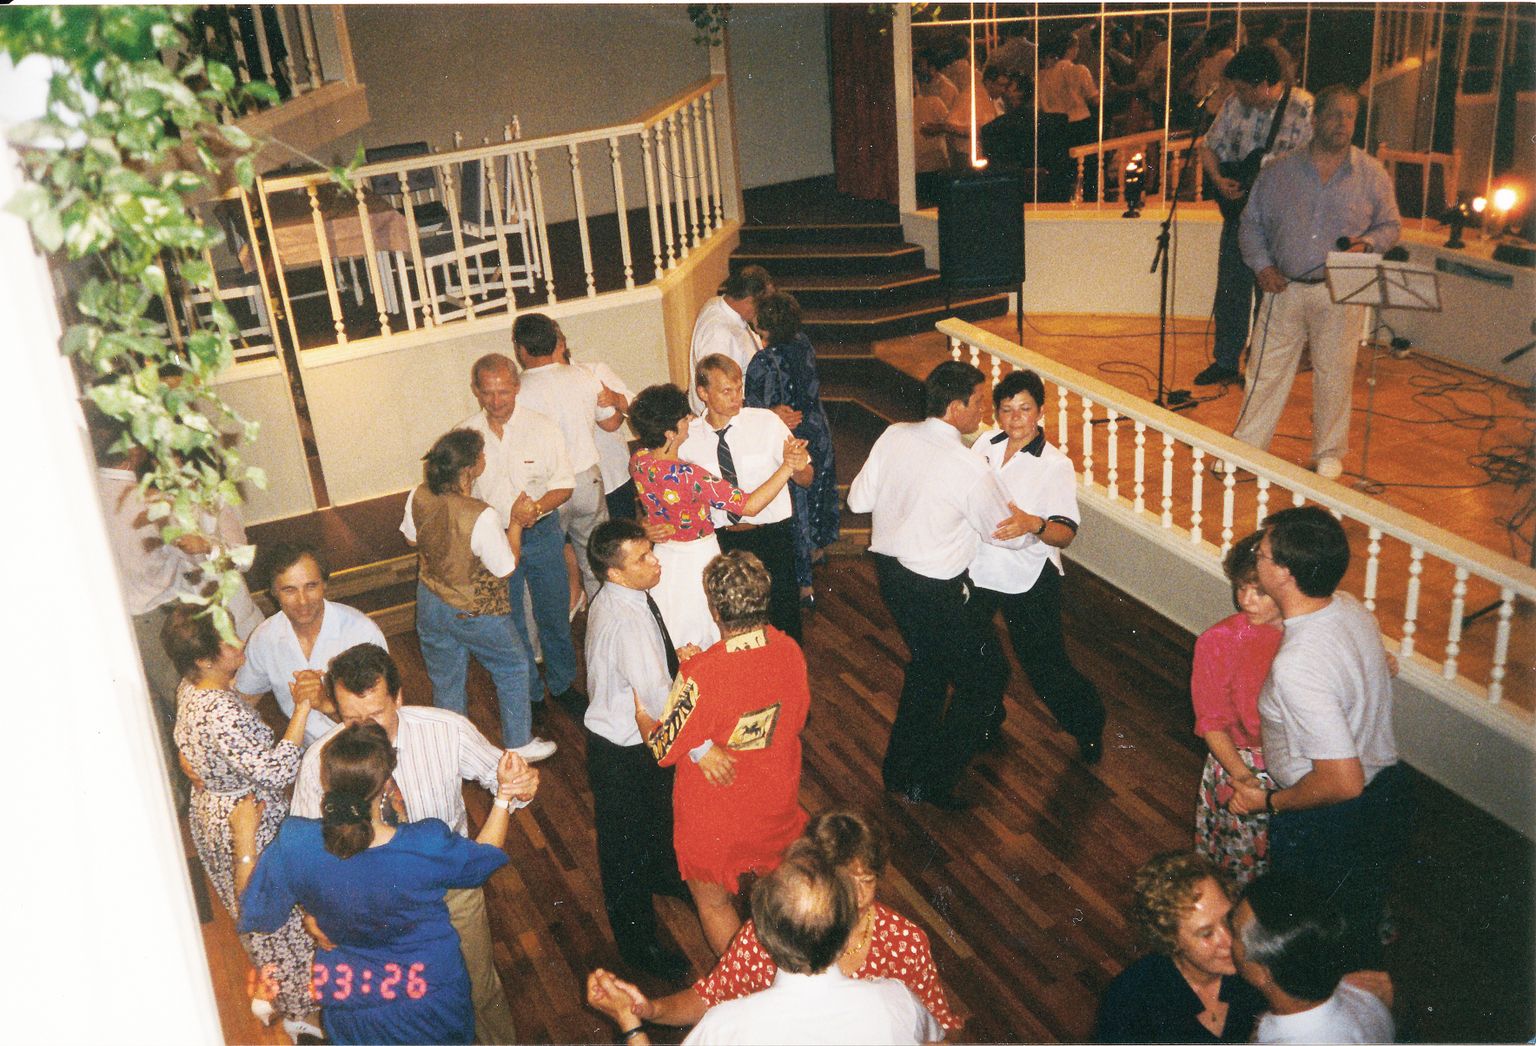 MATI NUUDE esinemised tõid alati täis nii restorani lauad kui ka tantsupõranda.